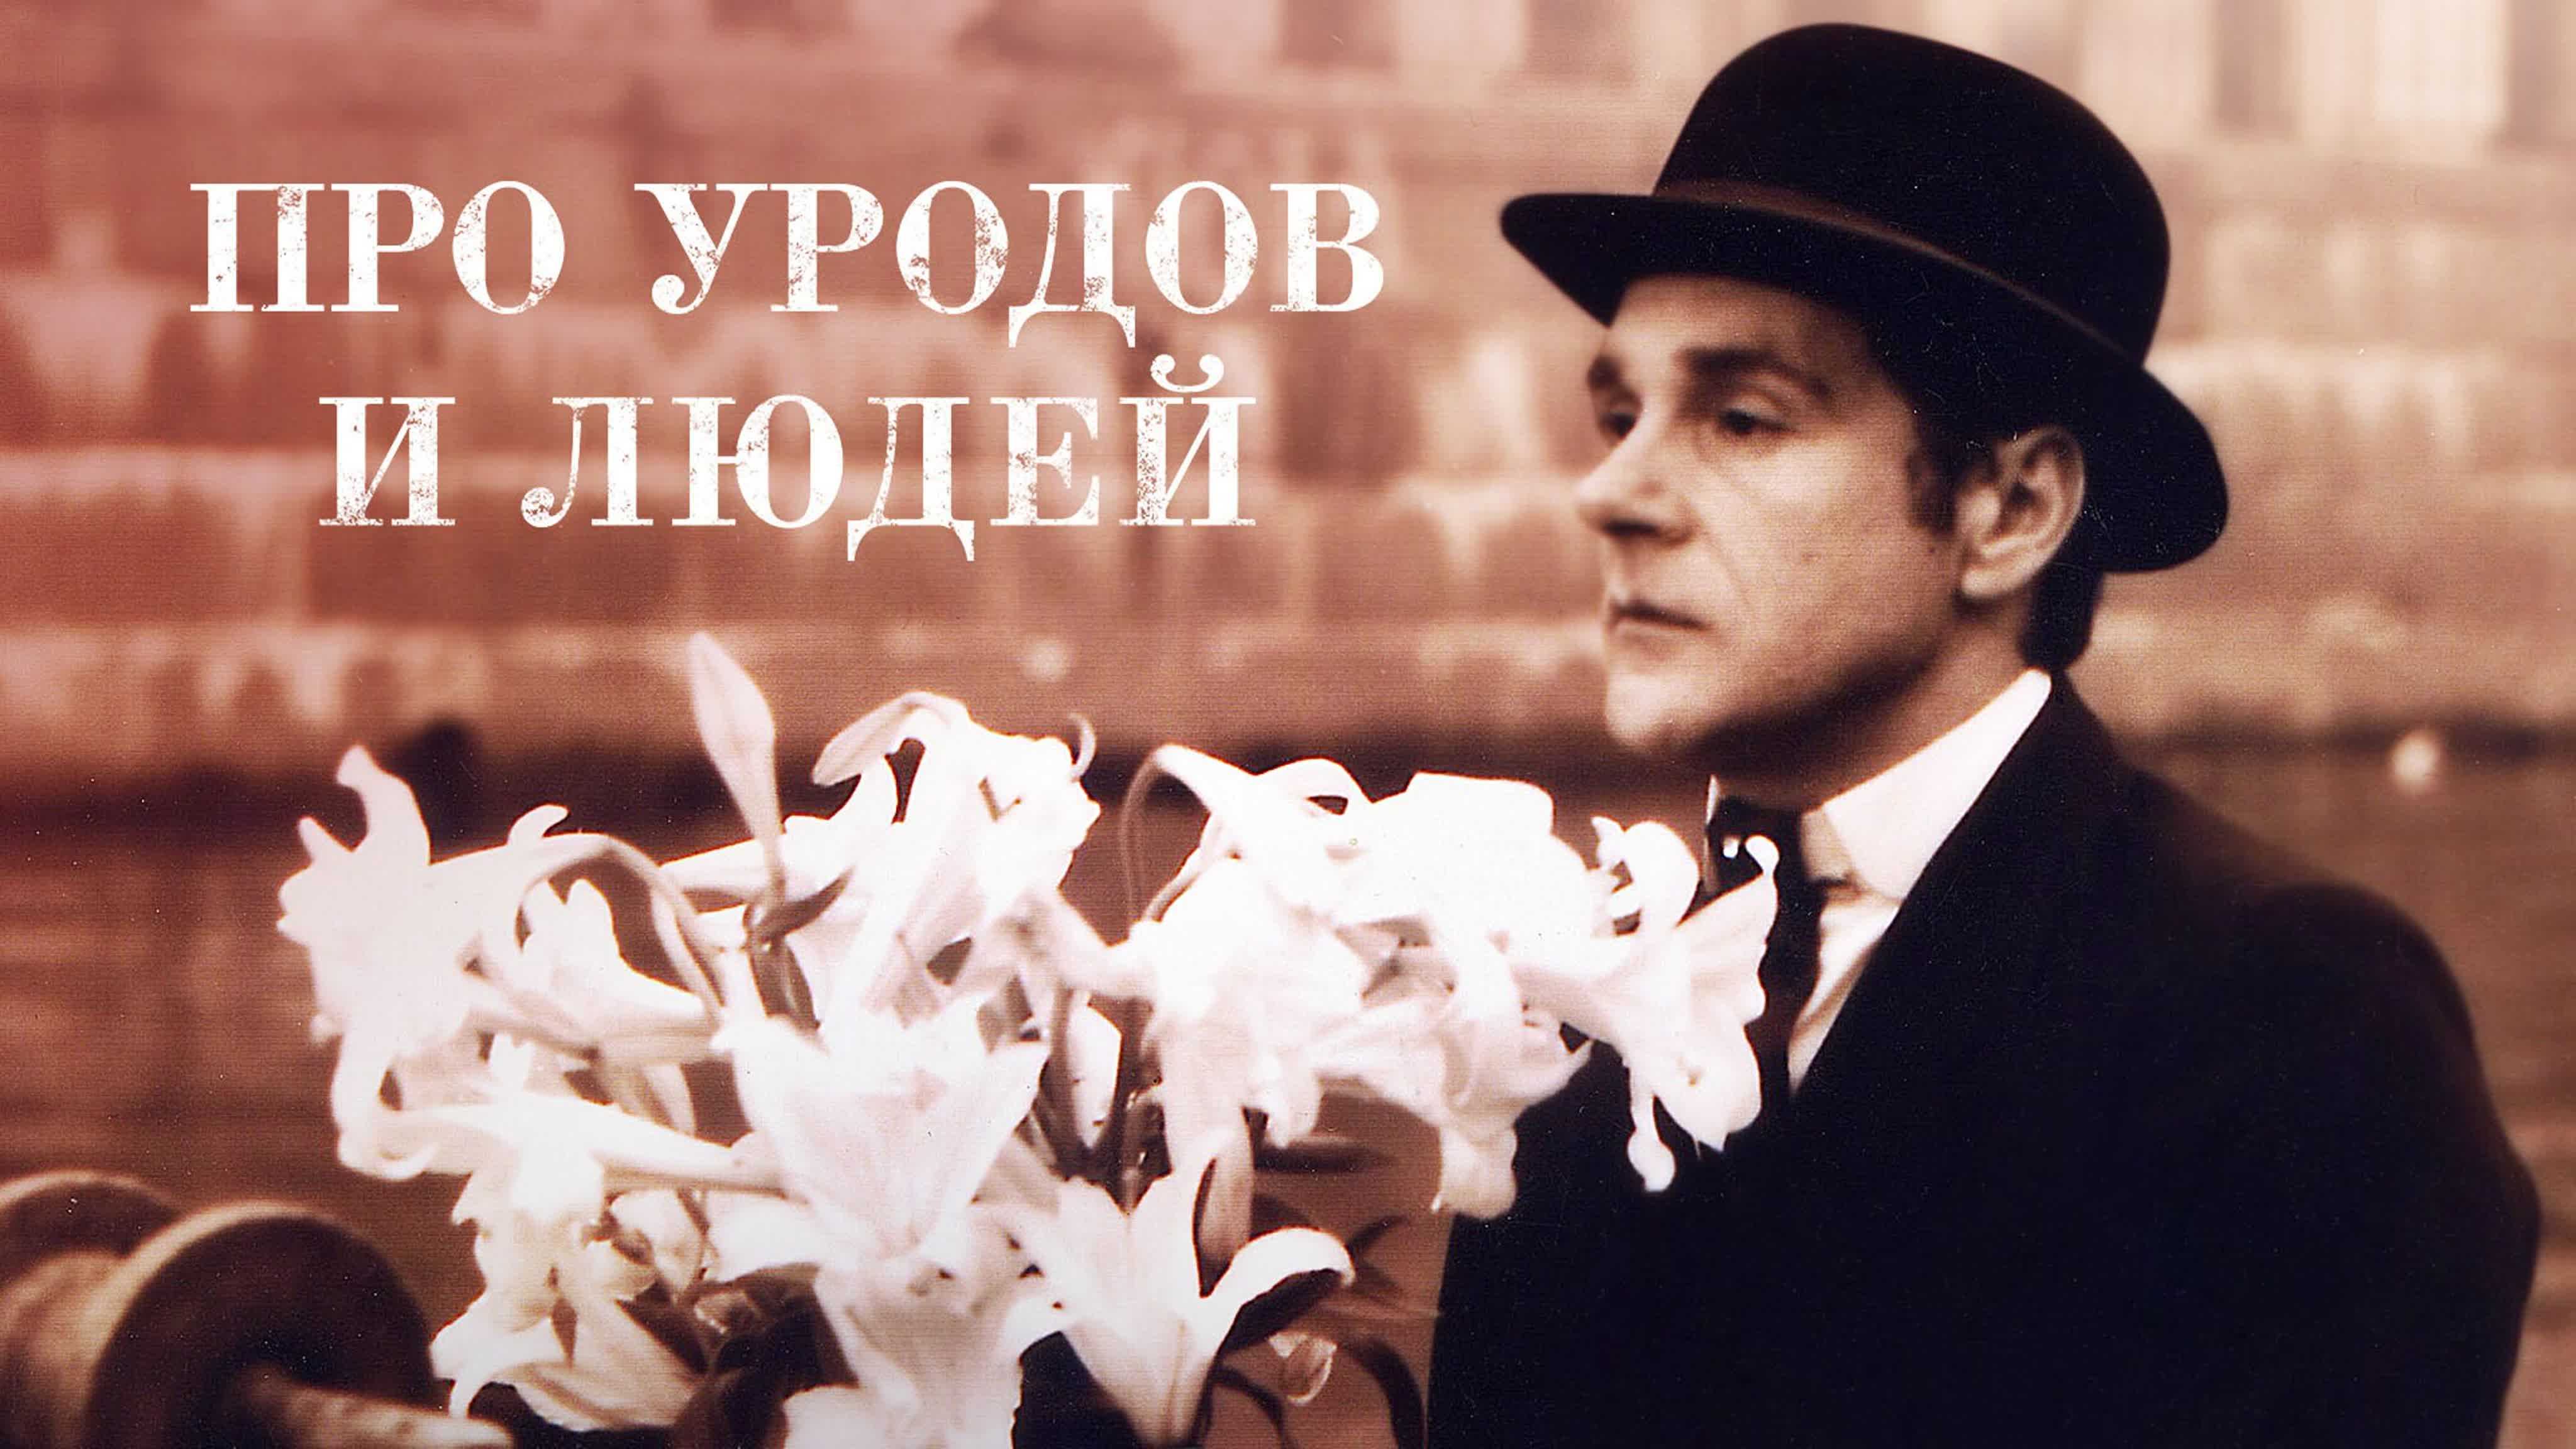 Виктор балабанов - биография, новости, личная жизнь